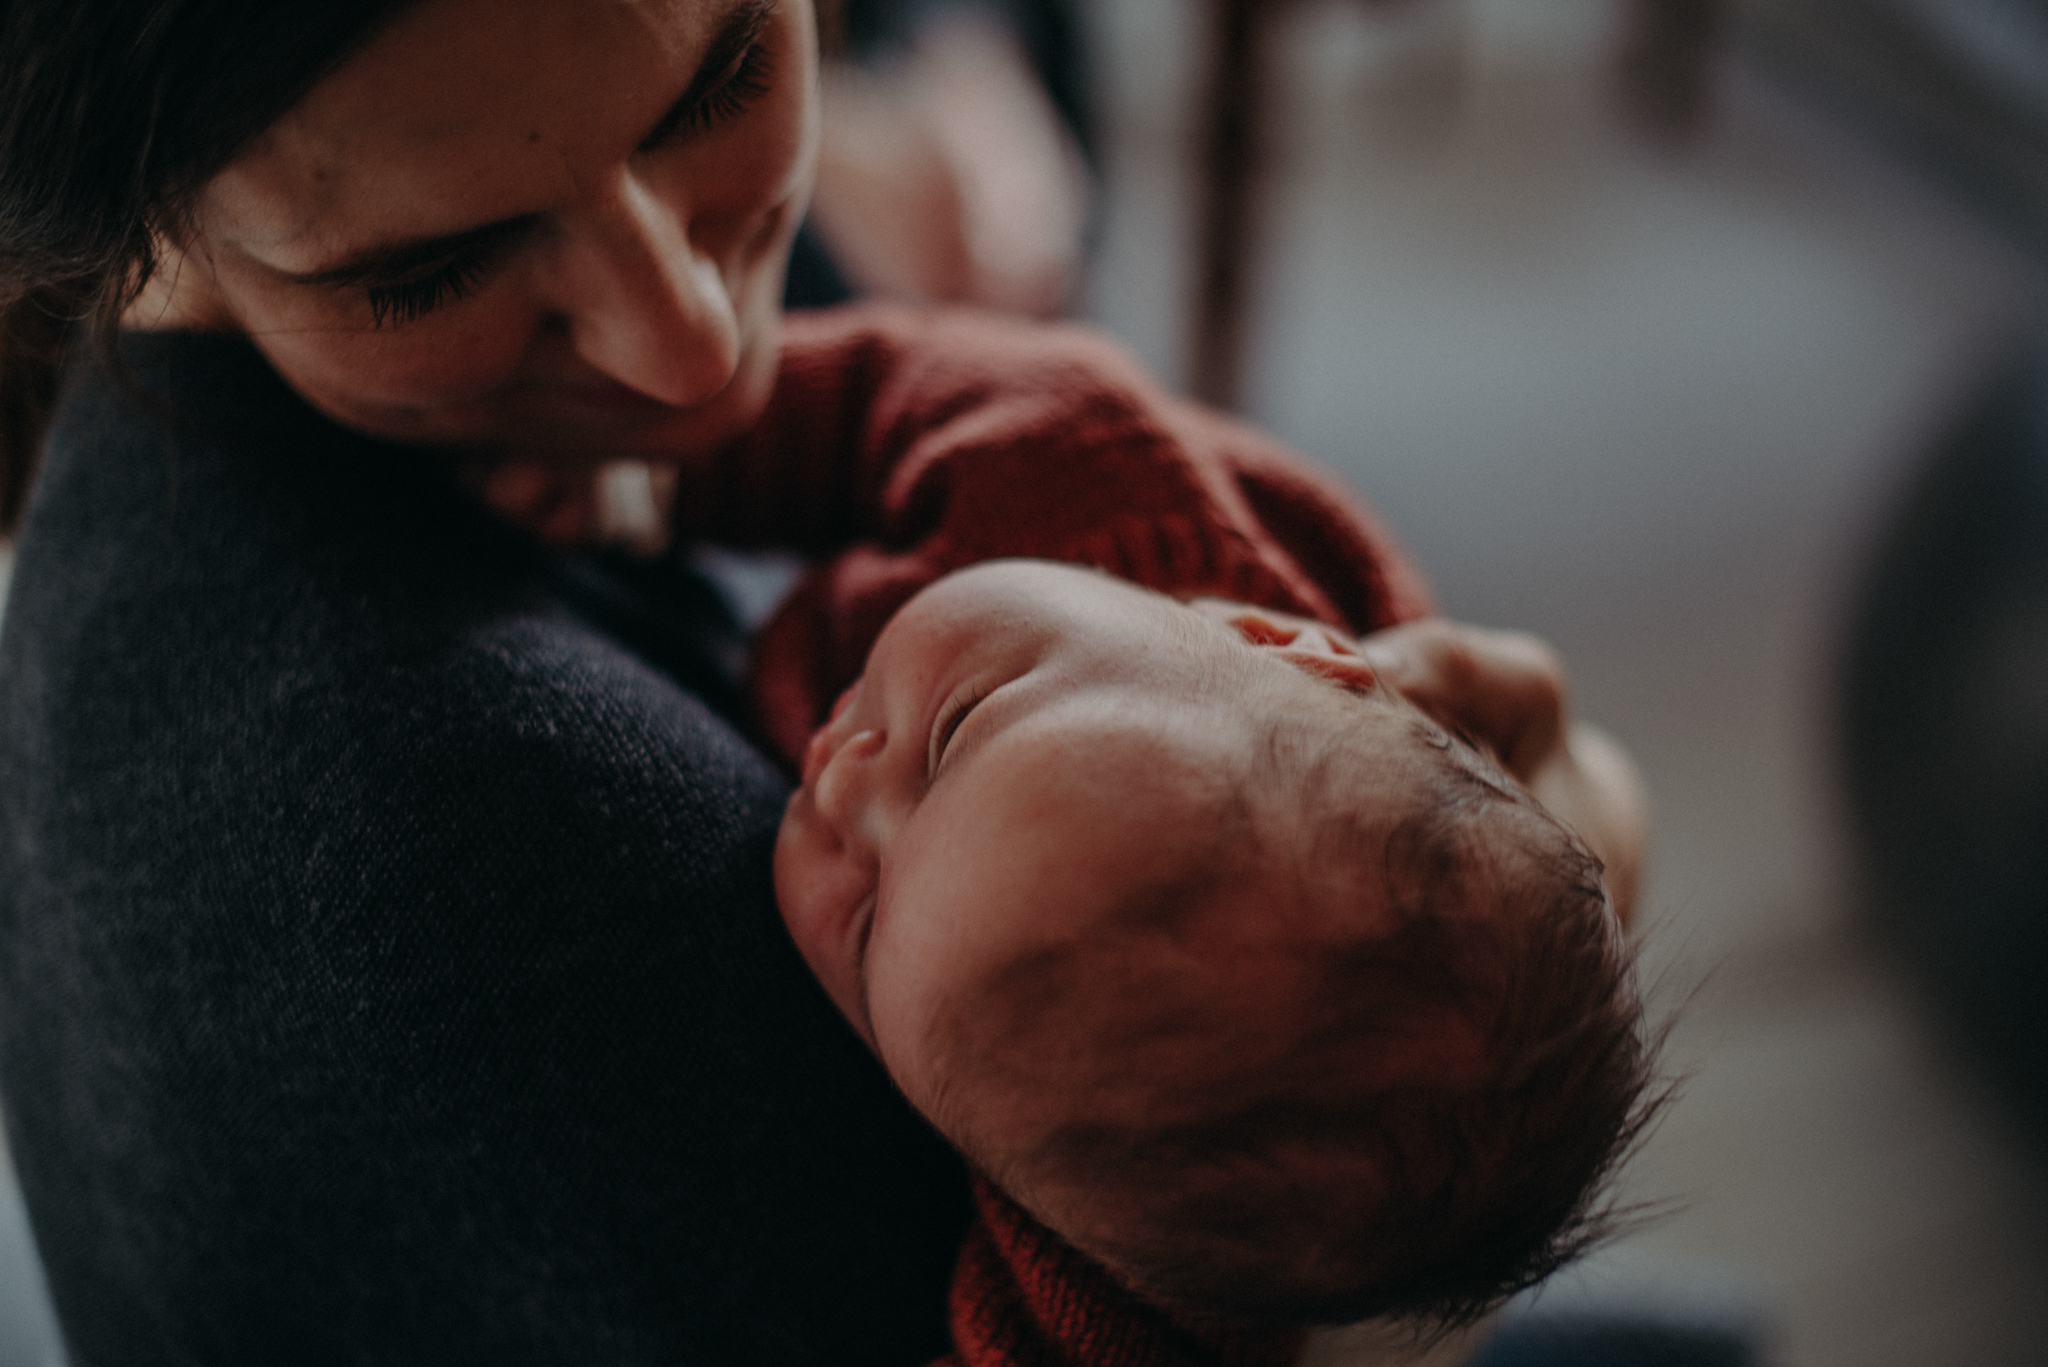 Babyfotografie entspannt zuhause mit Kind und Mama, Fotograf in Basel